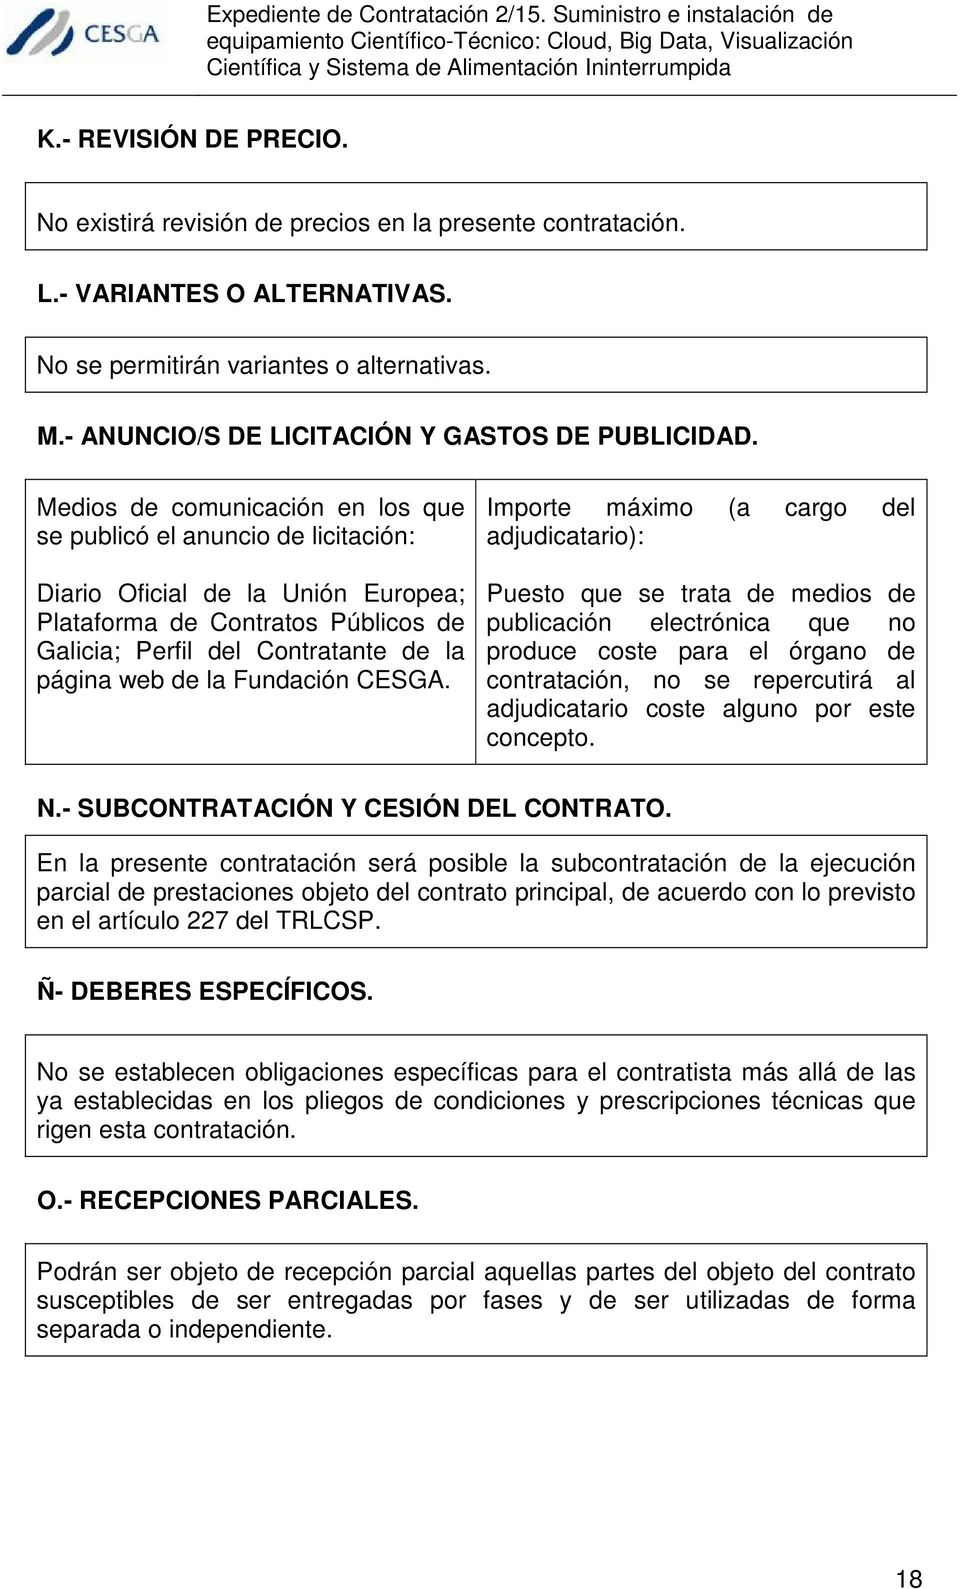 Medios de comunicación en los que se publicó el anuncio de licitación: Diario Oficial de la Unión Europea; Plataforma de Contratos Públicos de Galicia; Perfil del Contratante de la página web de la